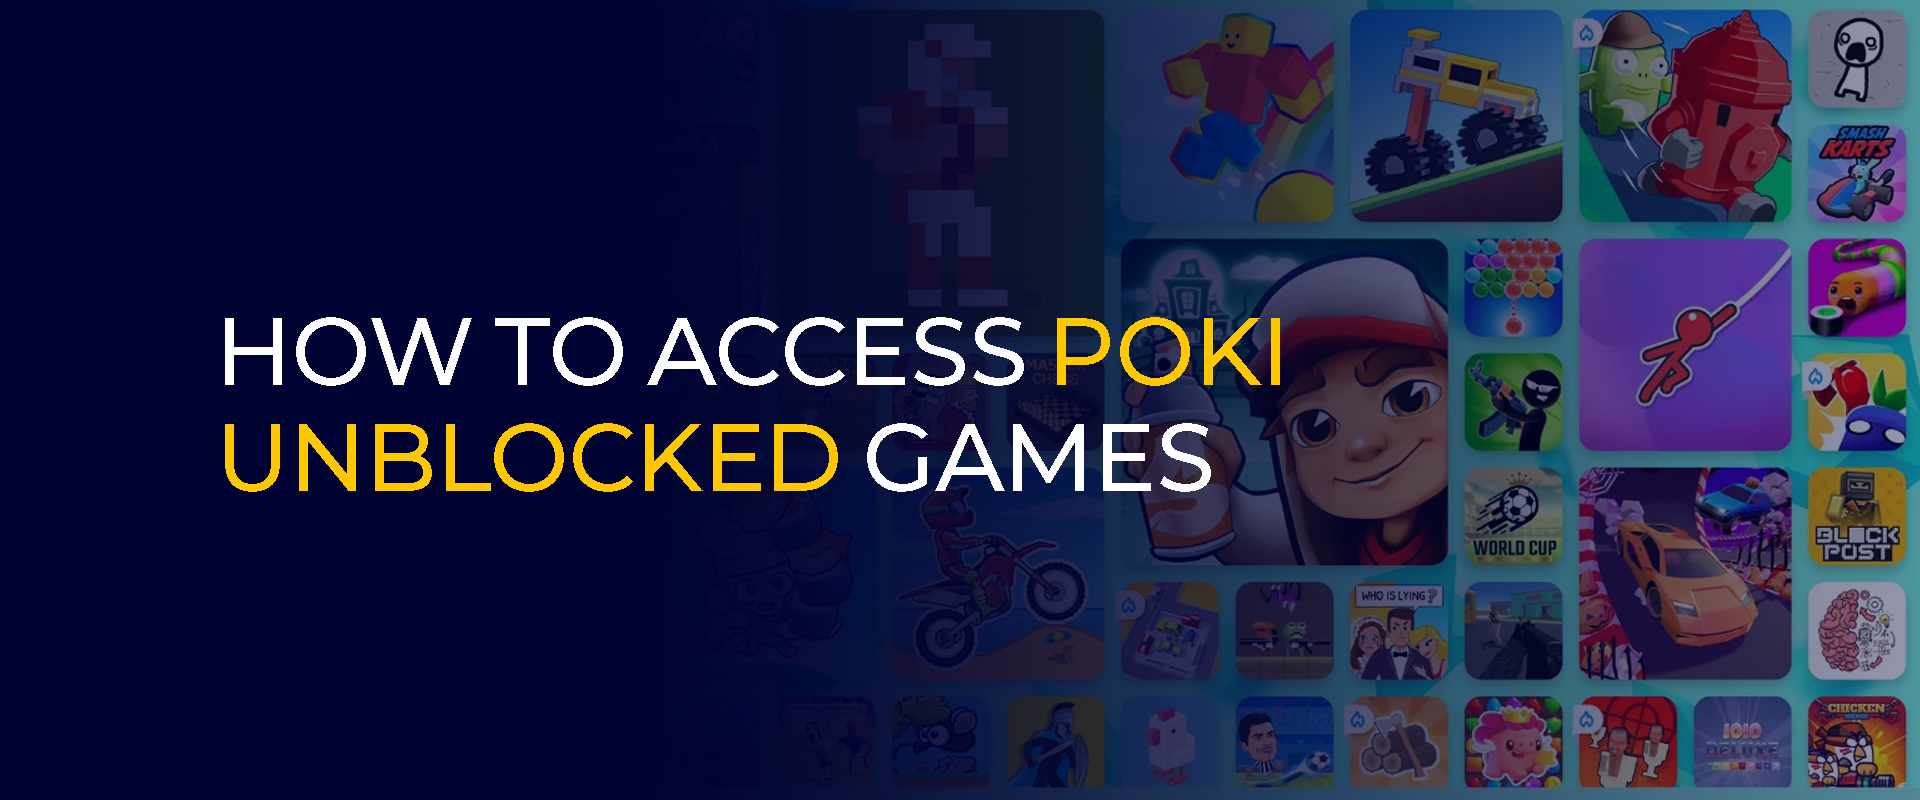 Come accedere ai giochi Poki sbloccati